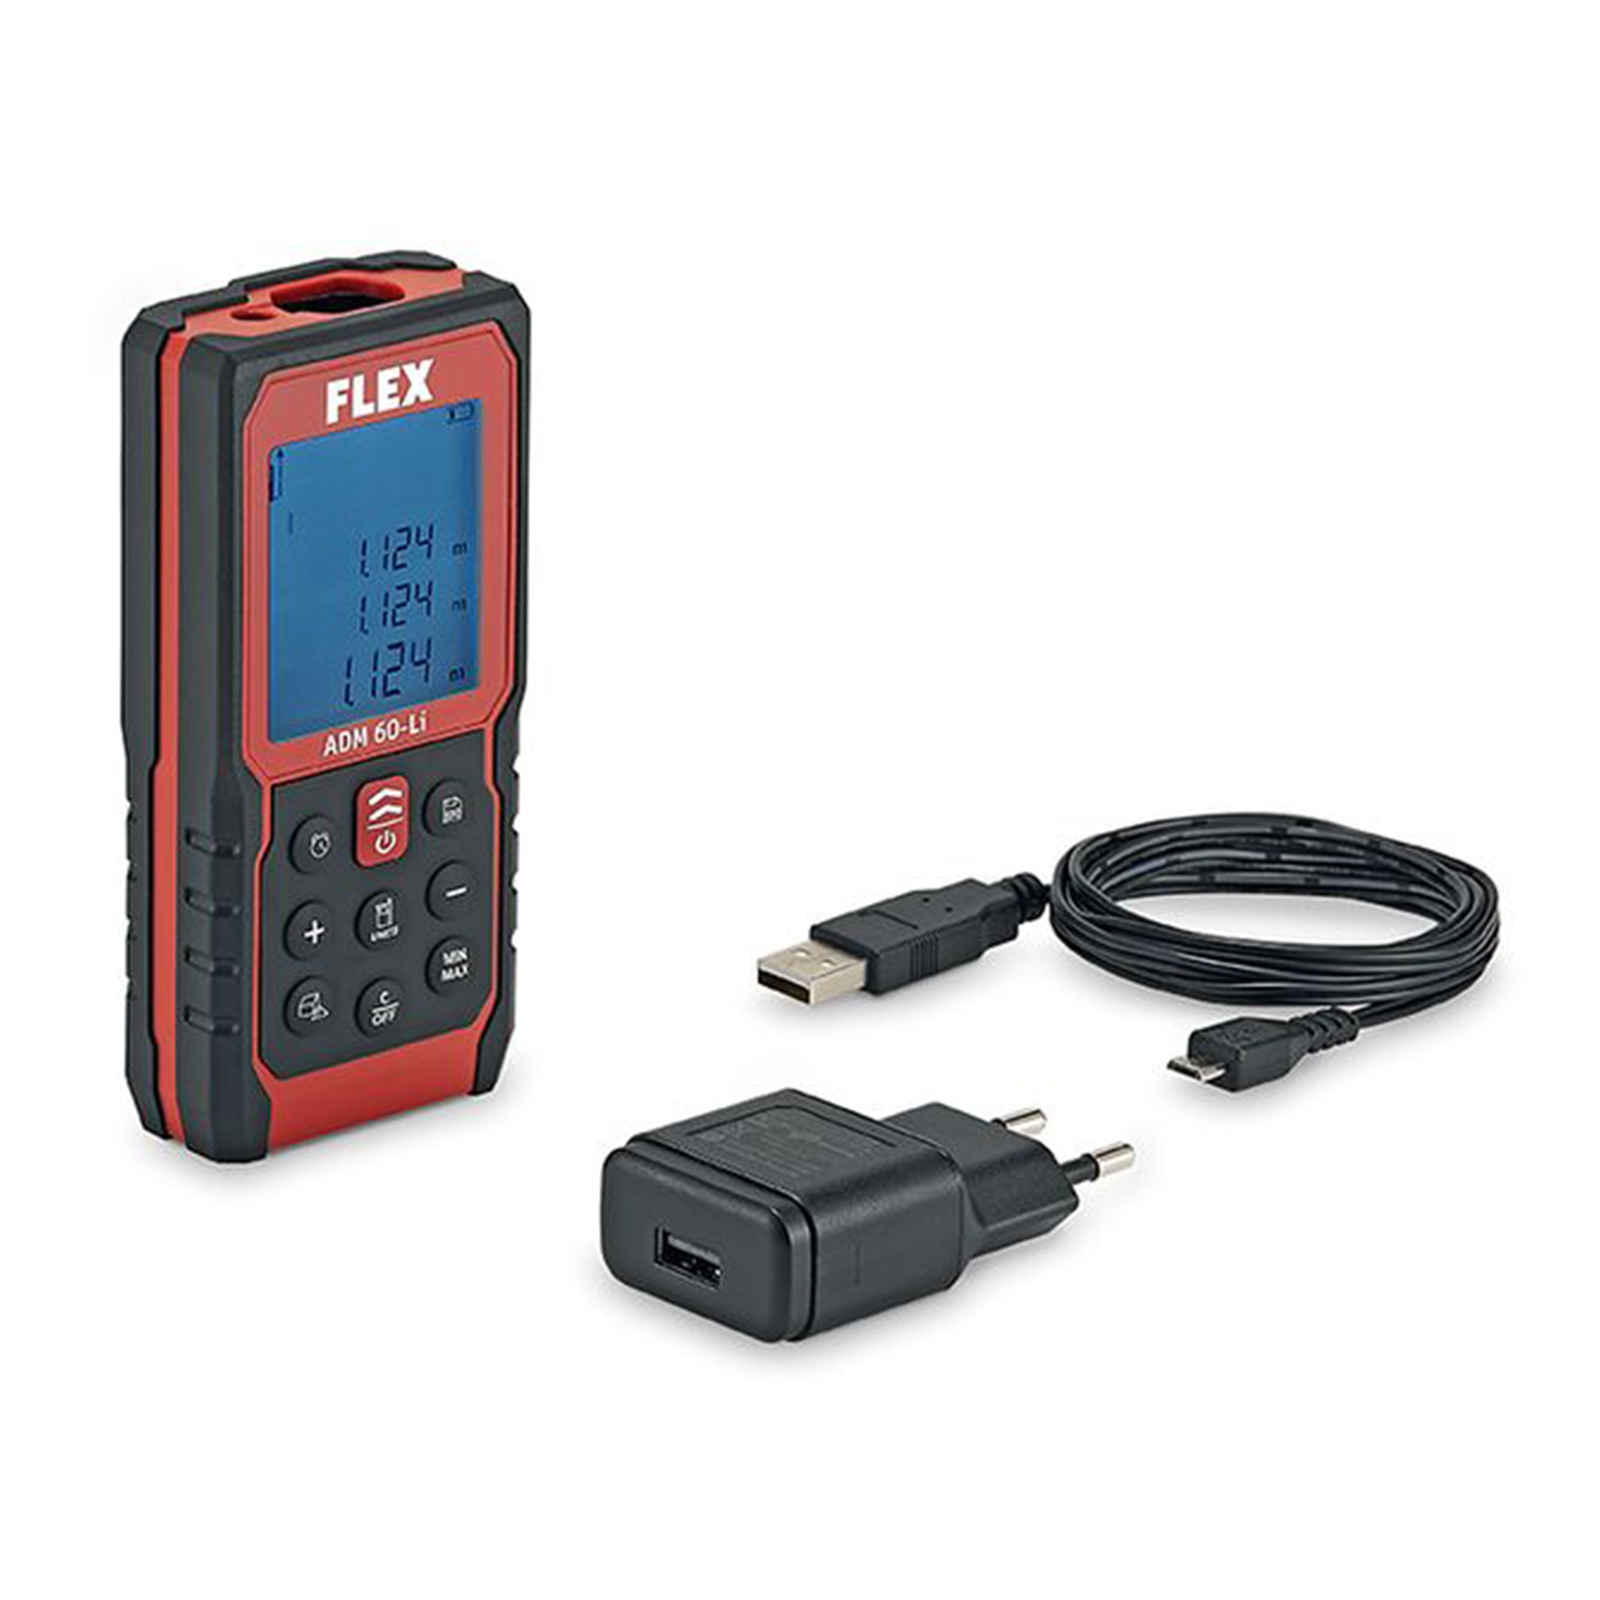 FLEX Laser Entfernungsmesser ADM 60 Li